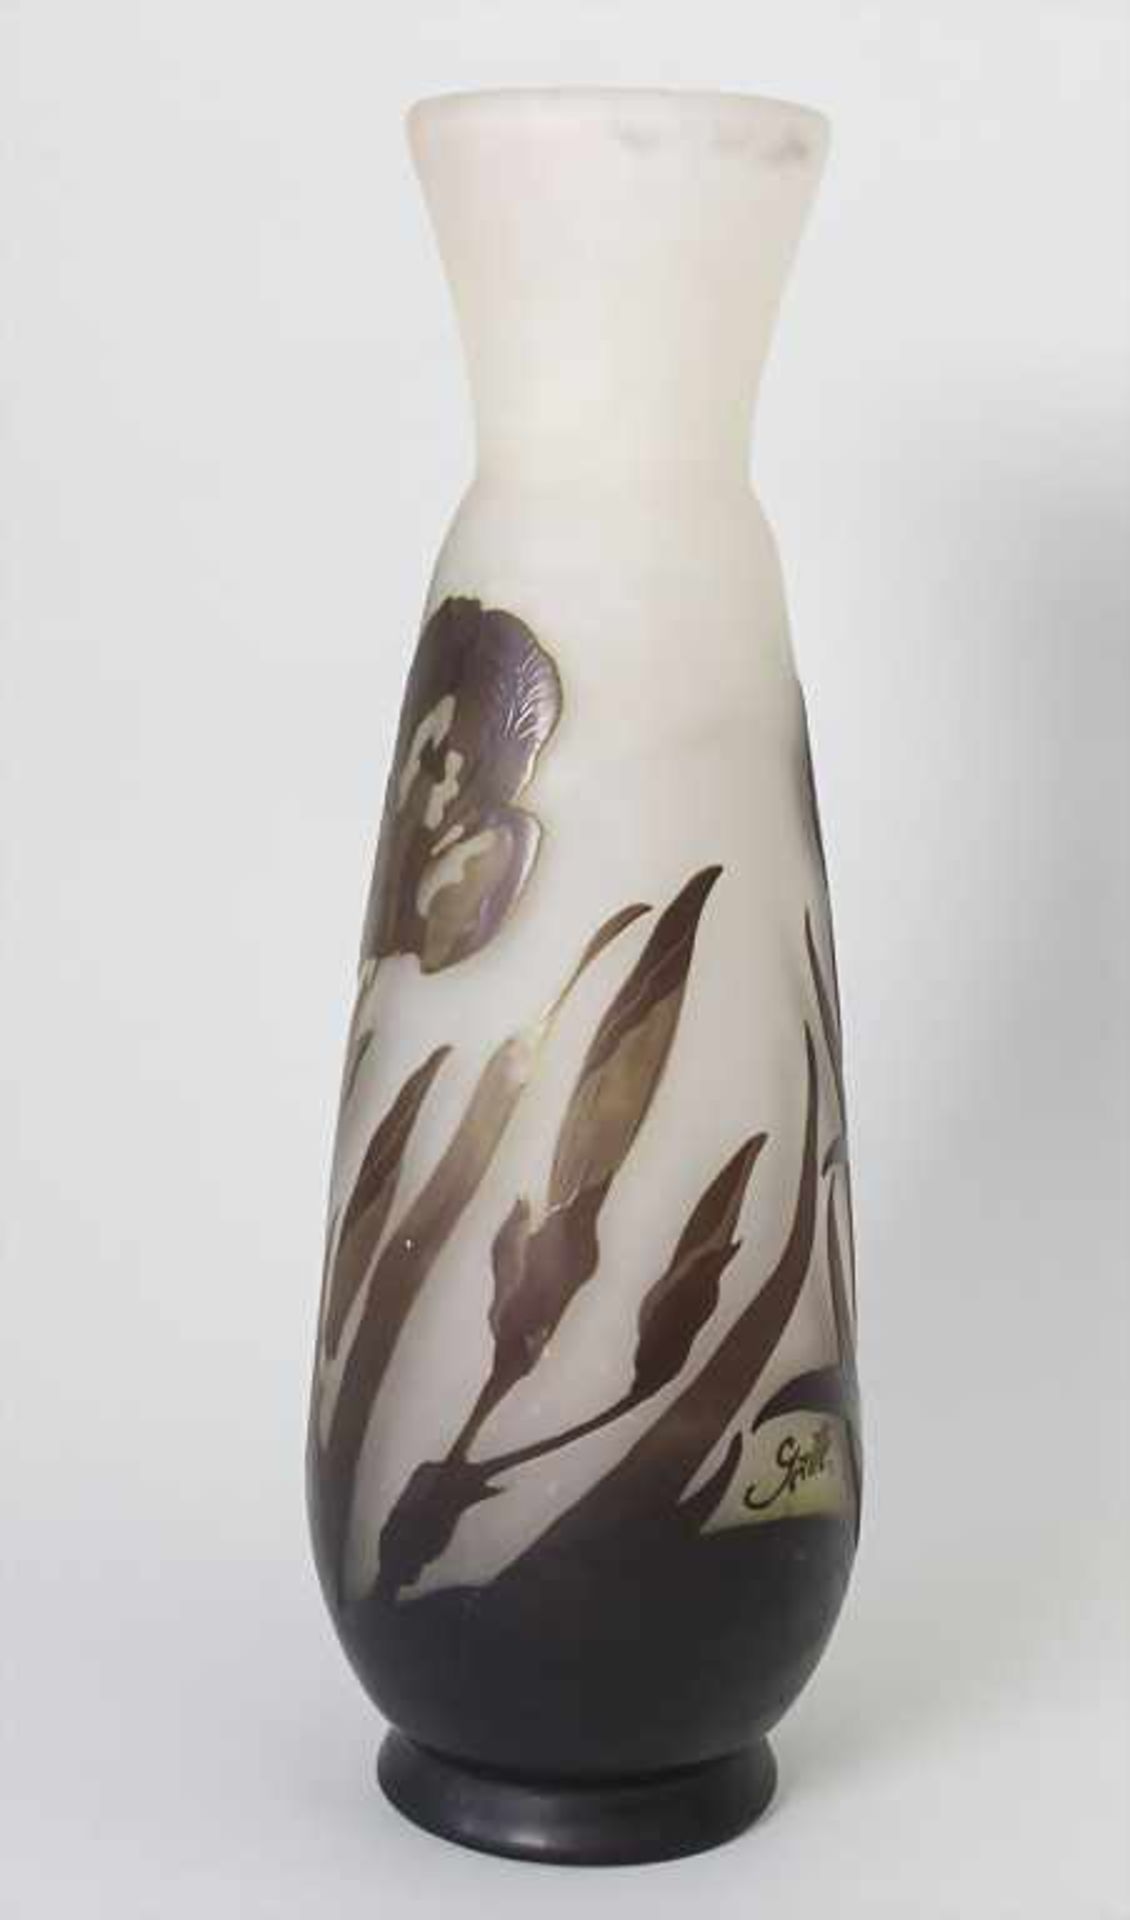 Große Jugendstil Vase mit Iris / An Art Nouveau large vase with iris, Emile Gallé, Ecole de Nancy, - Image 2 of 10